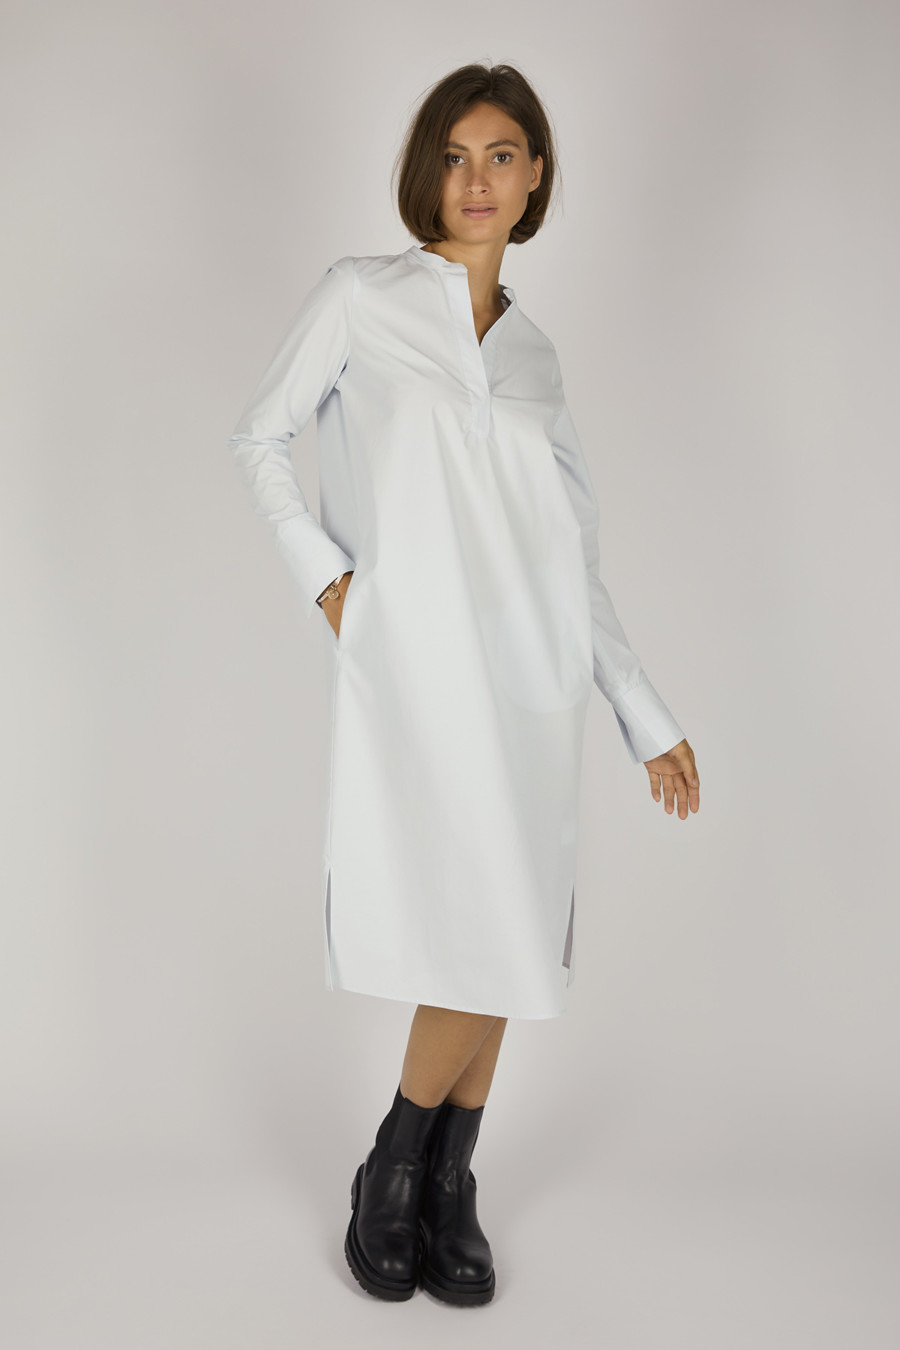 ETTA – Calf-length cotton dress – Color: Sky